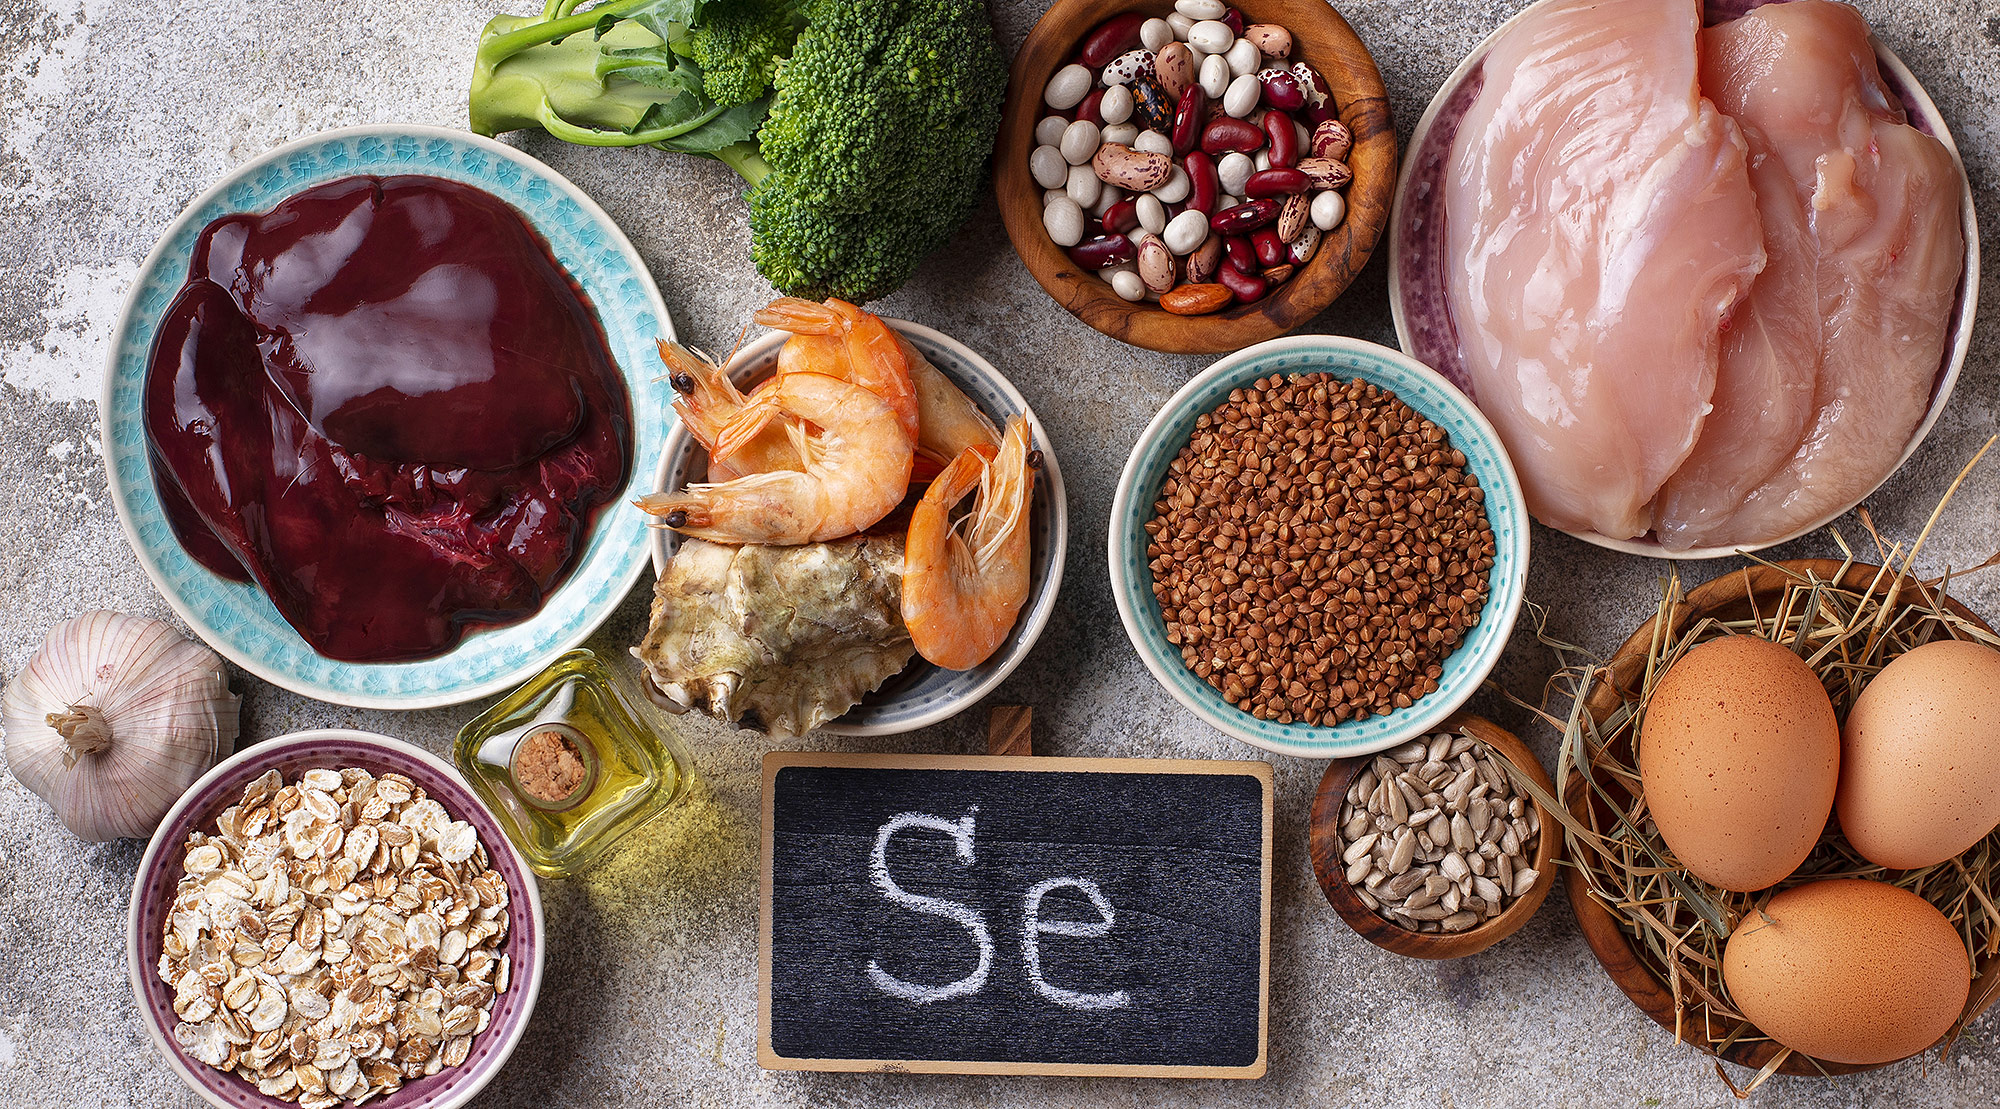 Foods containing selenium